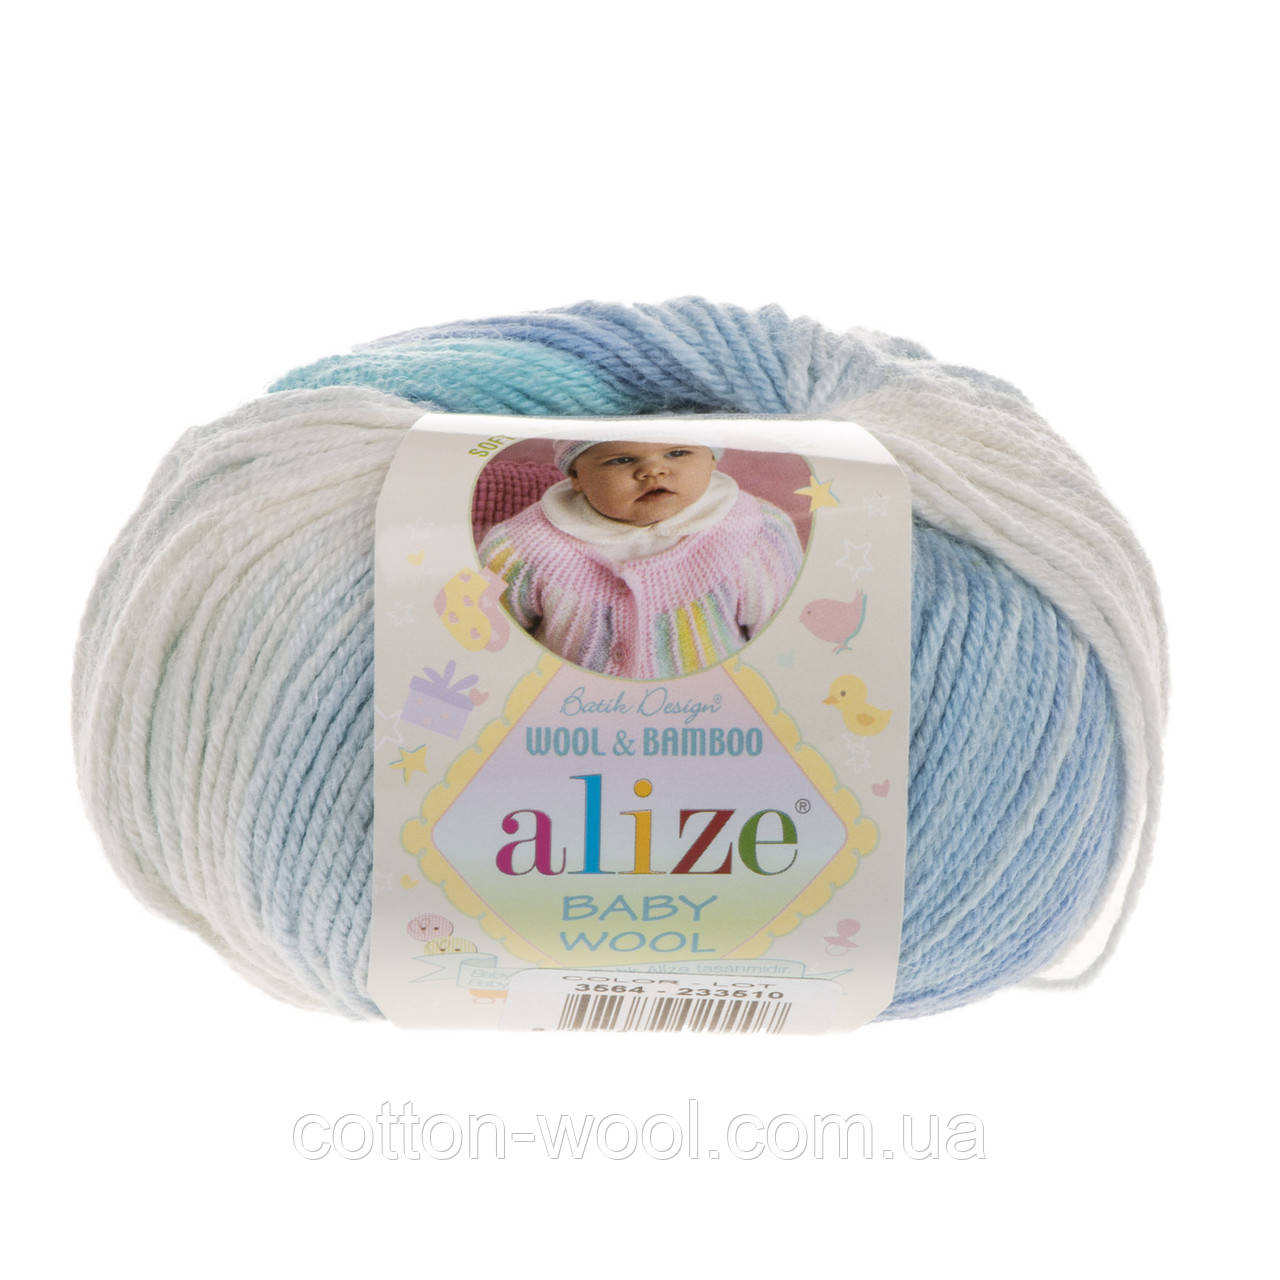 Alize Baby Wool Batik (Алізе бебі вул батик) 3564